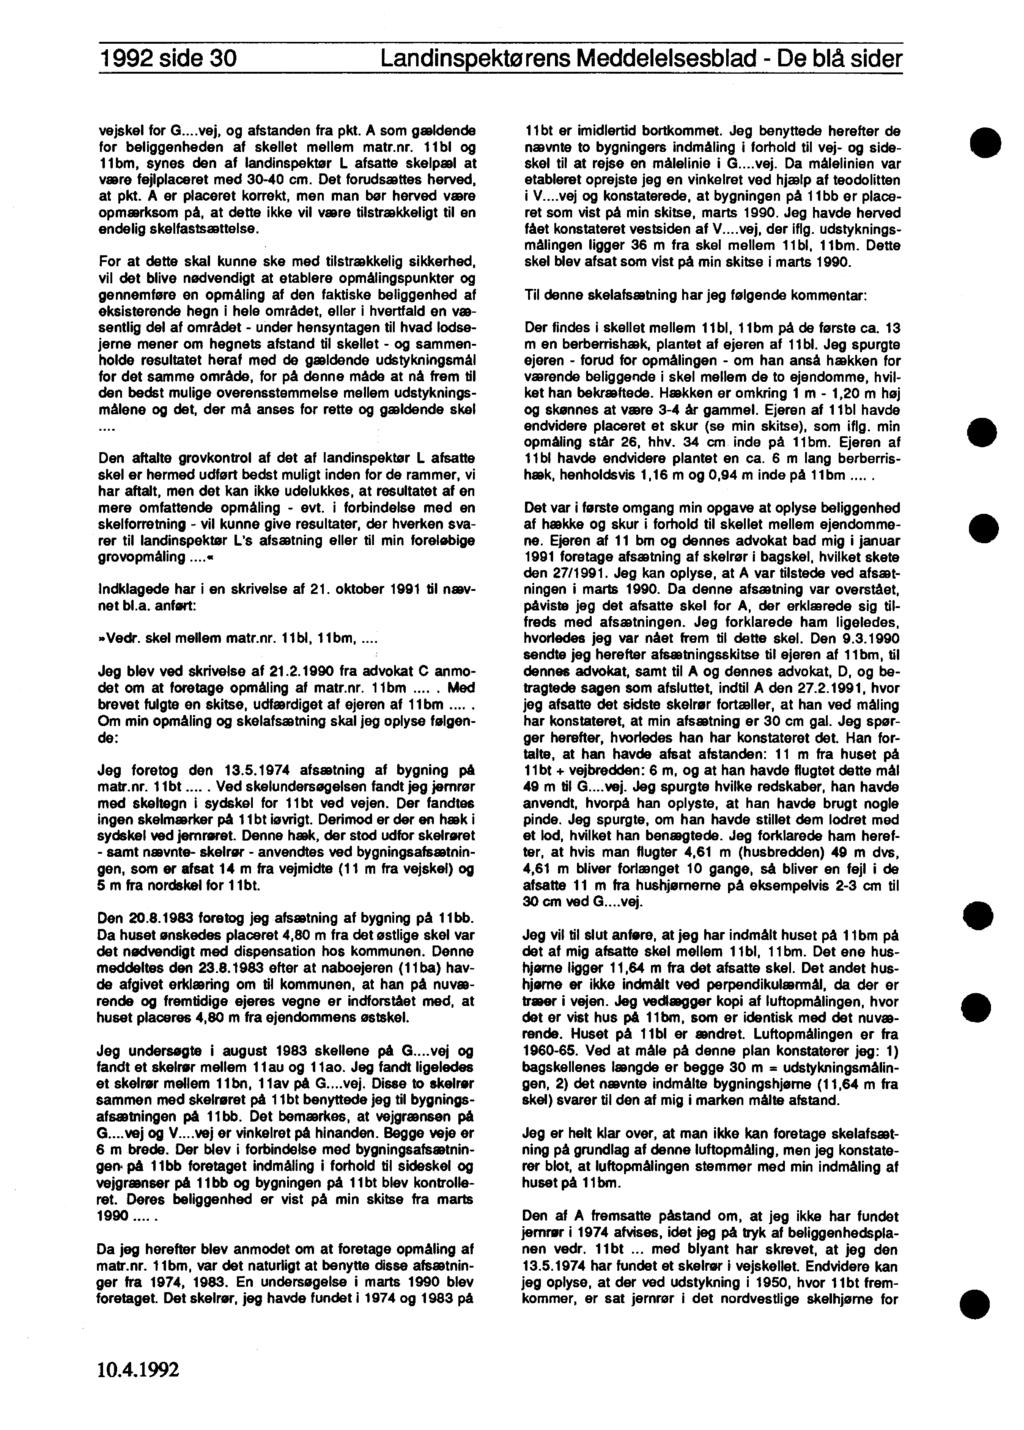 1992 side 30 Landinspektørens Meddelelsesblad - De blå sider vejskel for G...vej, og afstanden fra pkt. A som gældende for beliggenheden af skellet mellem matr.nr.